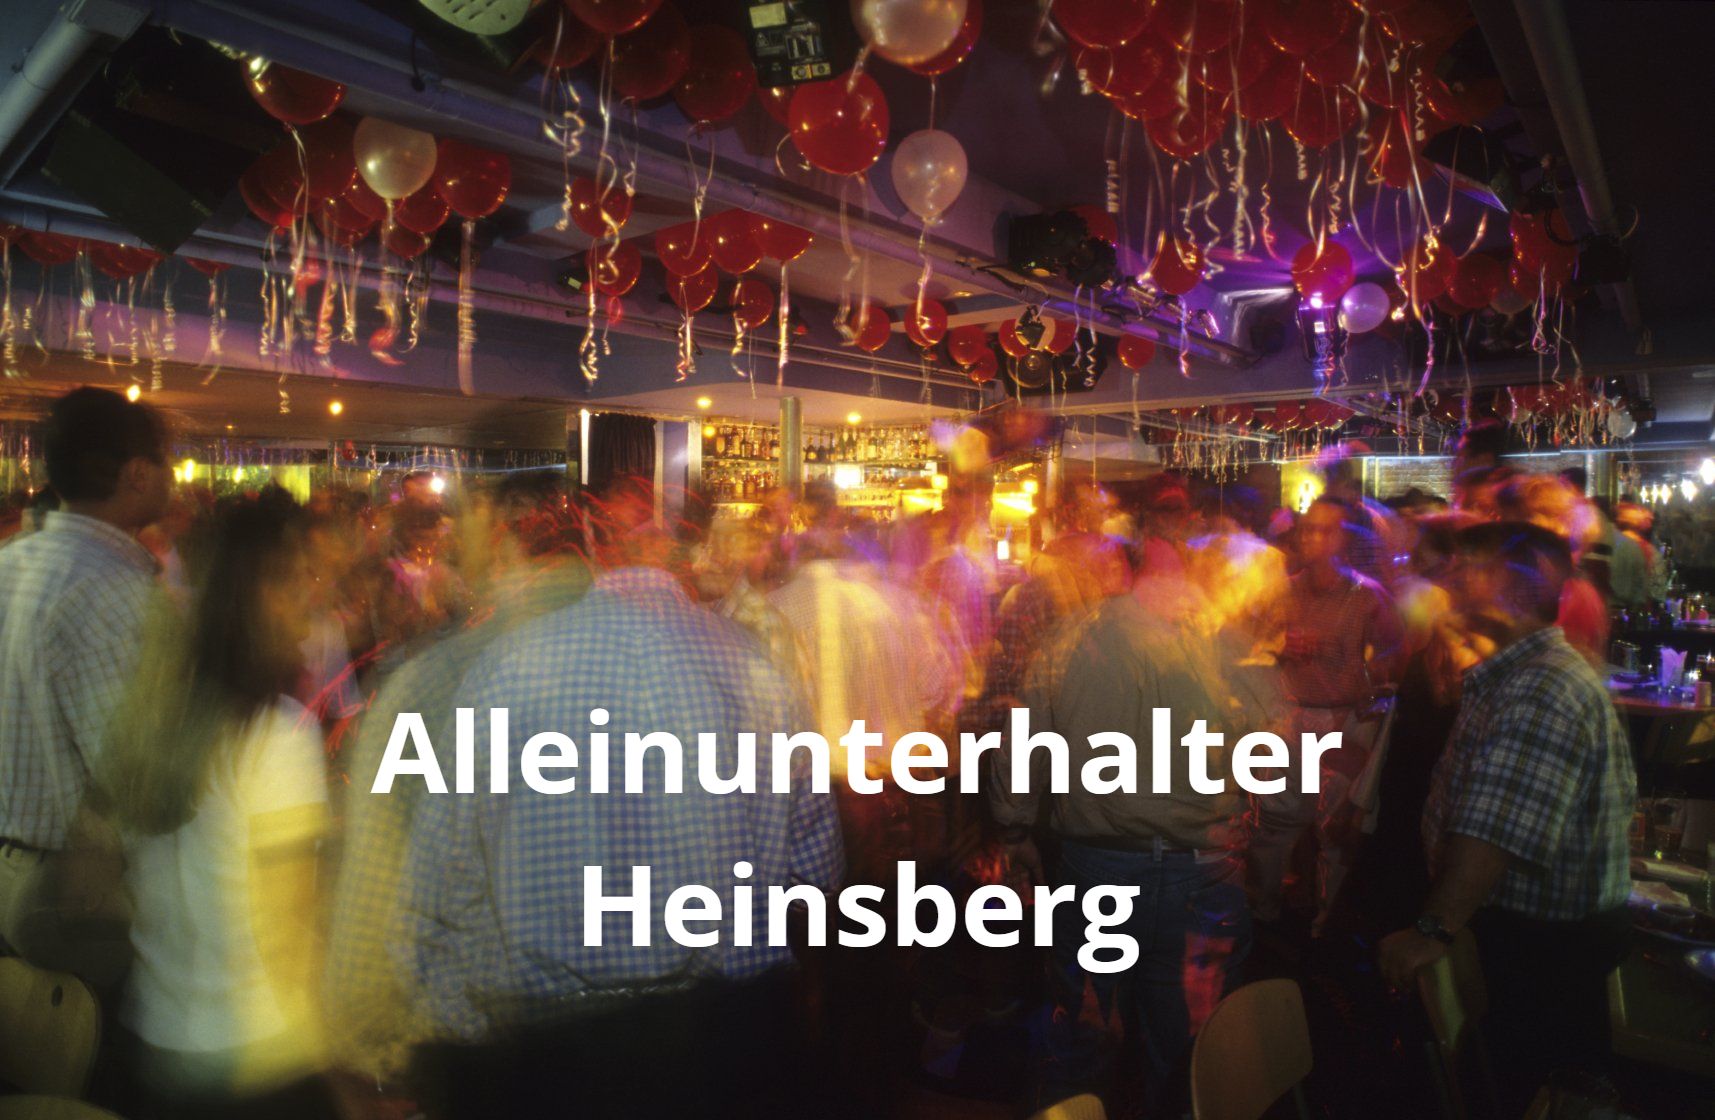 Alleinunterhalter Heinsberg - Phantastische Stimmung !